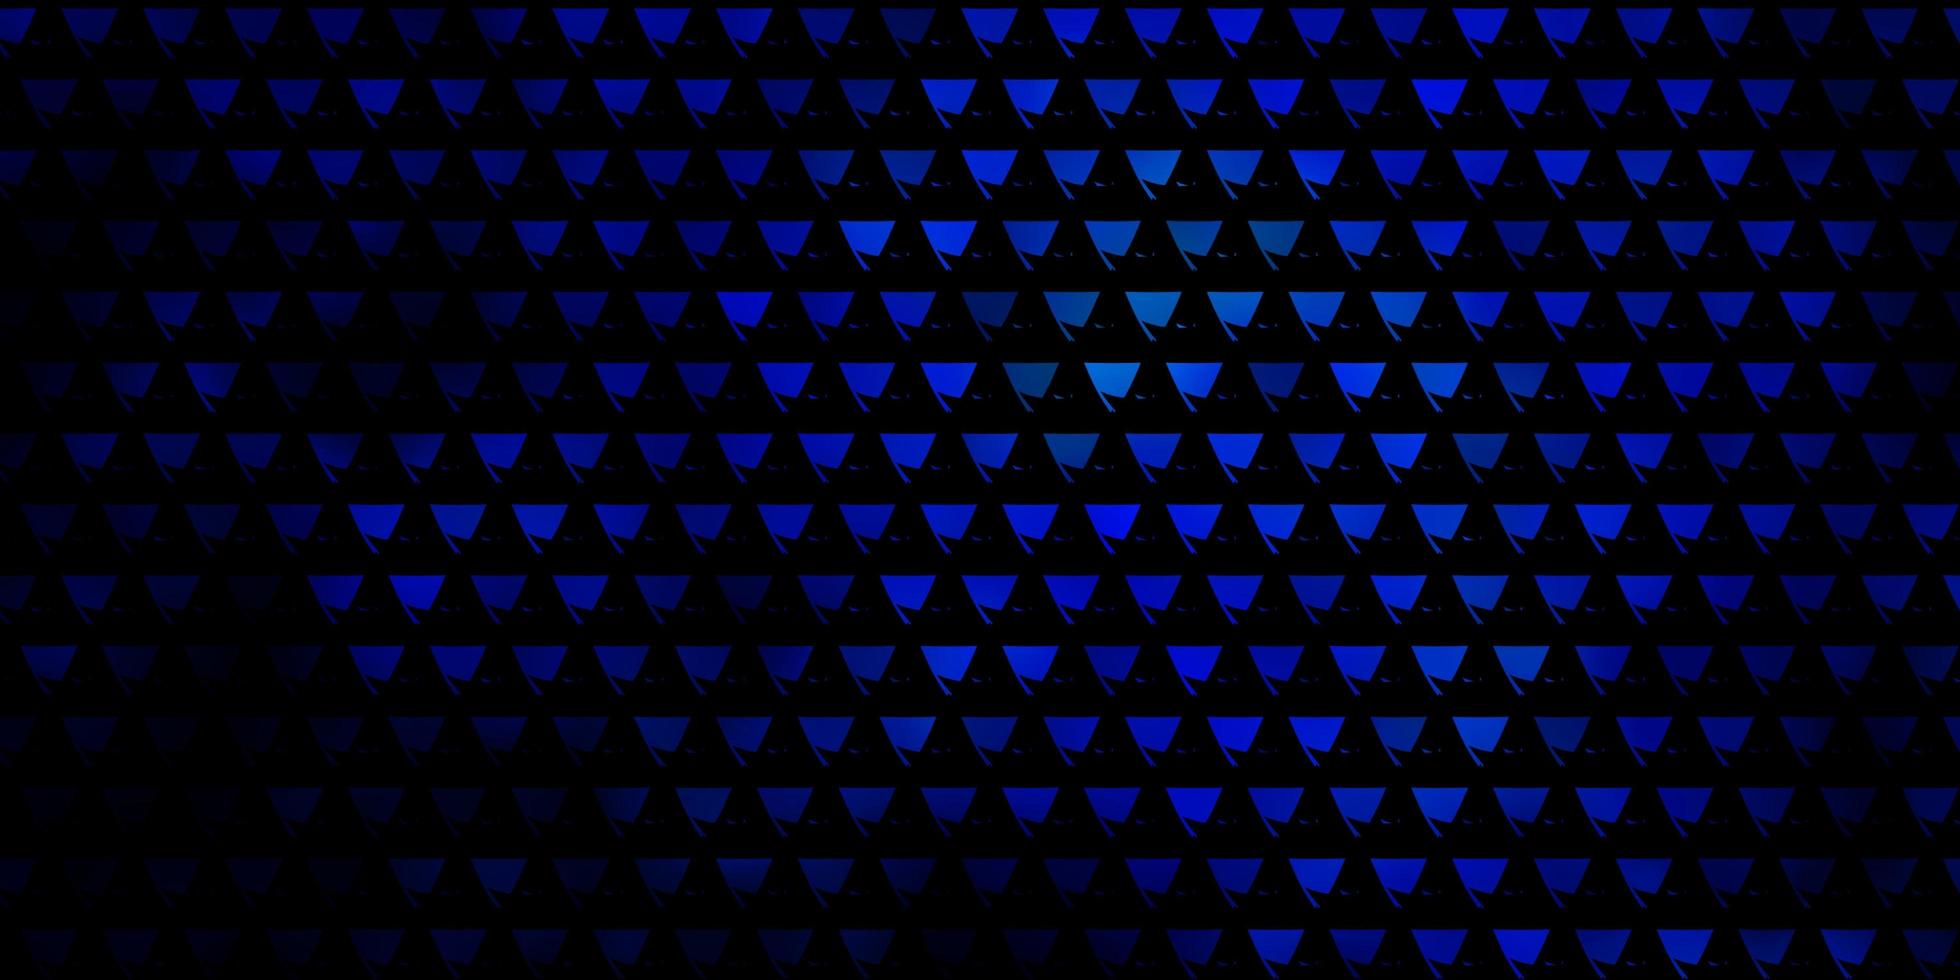 layout de vetor de azul escuro com linhas, triângulos.